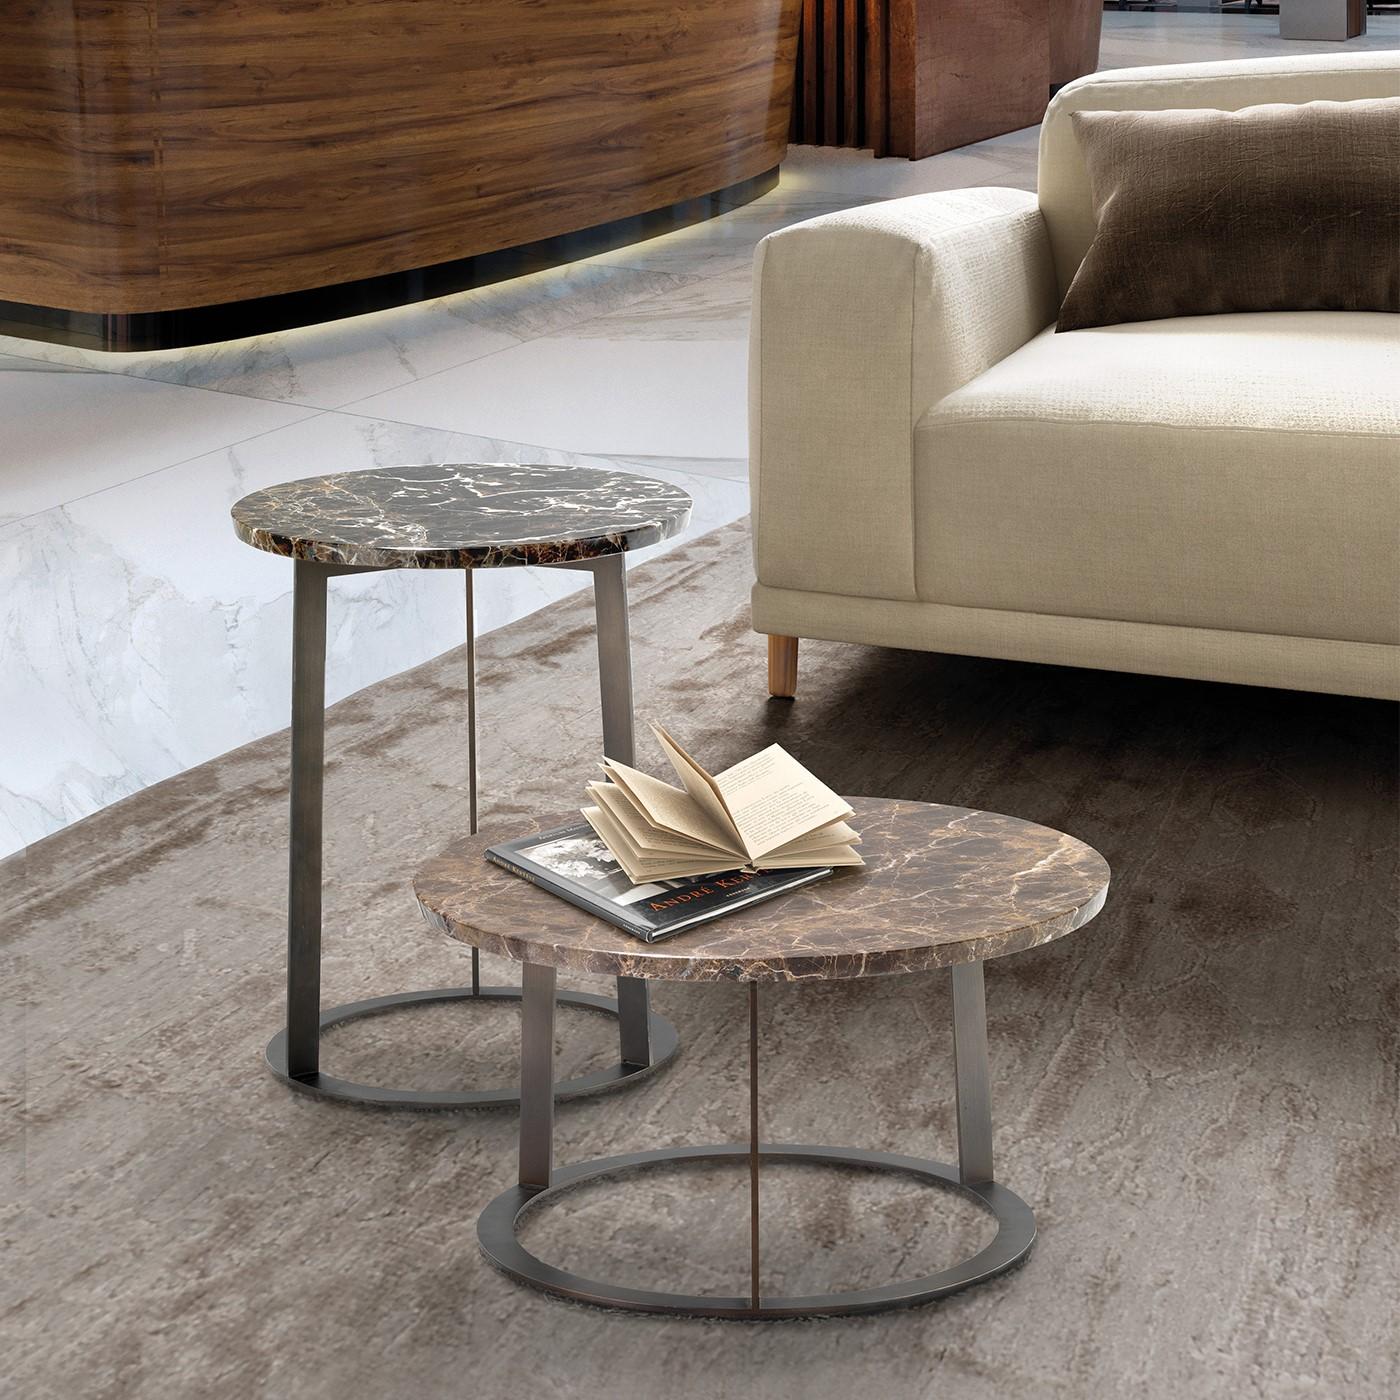 D'un design épuré et élégant, la table d'appoint Liberty apportera une sophistication intemporelle à tout décor. D'un style contemporain raffiné, il se compose d'une structure en métal laqué et d'une superbe assise en marbre. Il est préférable de